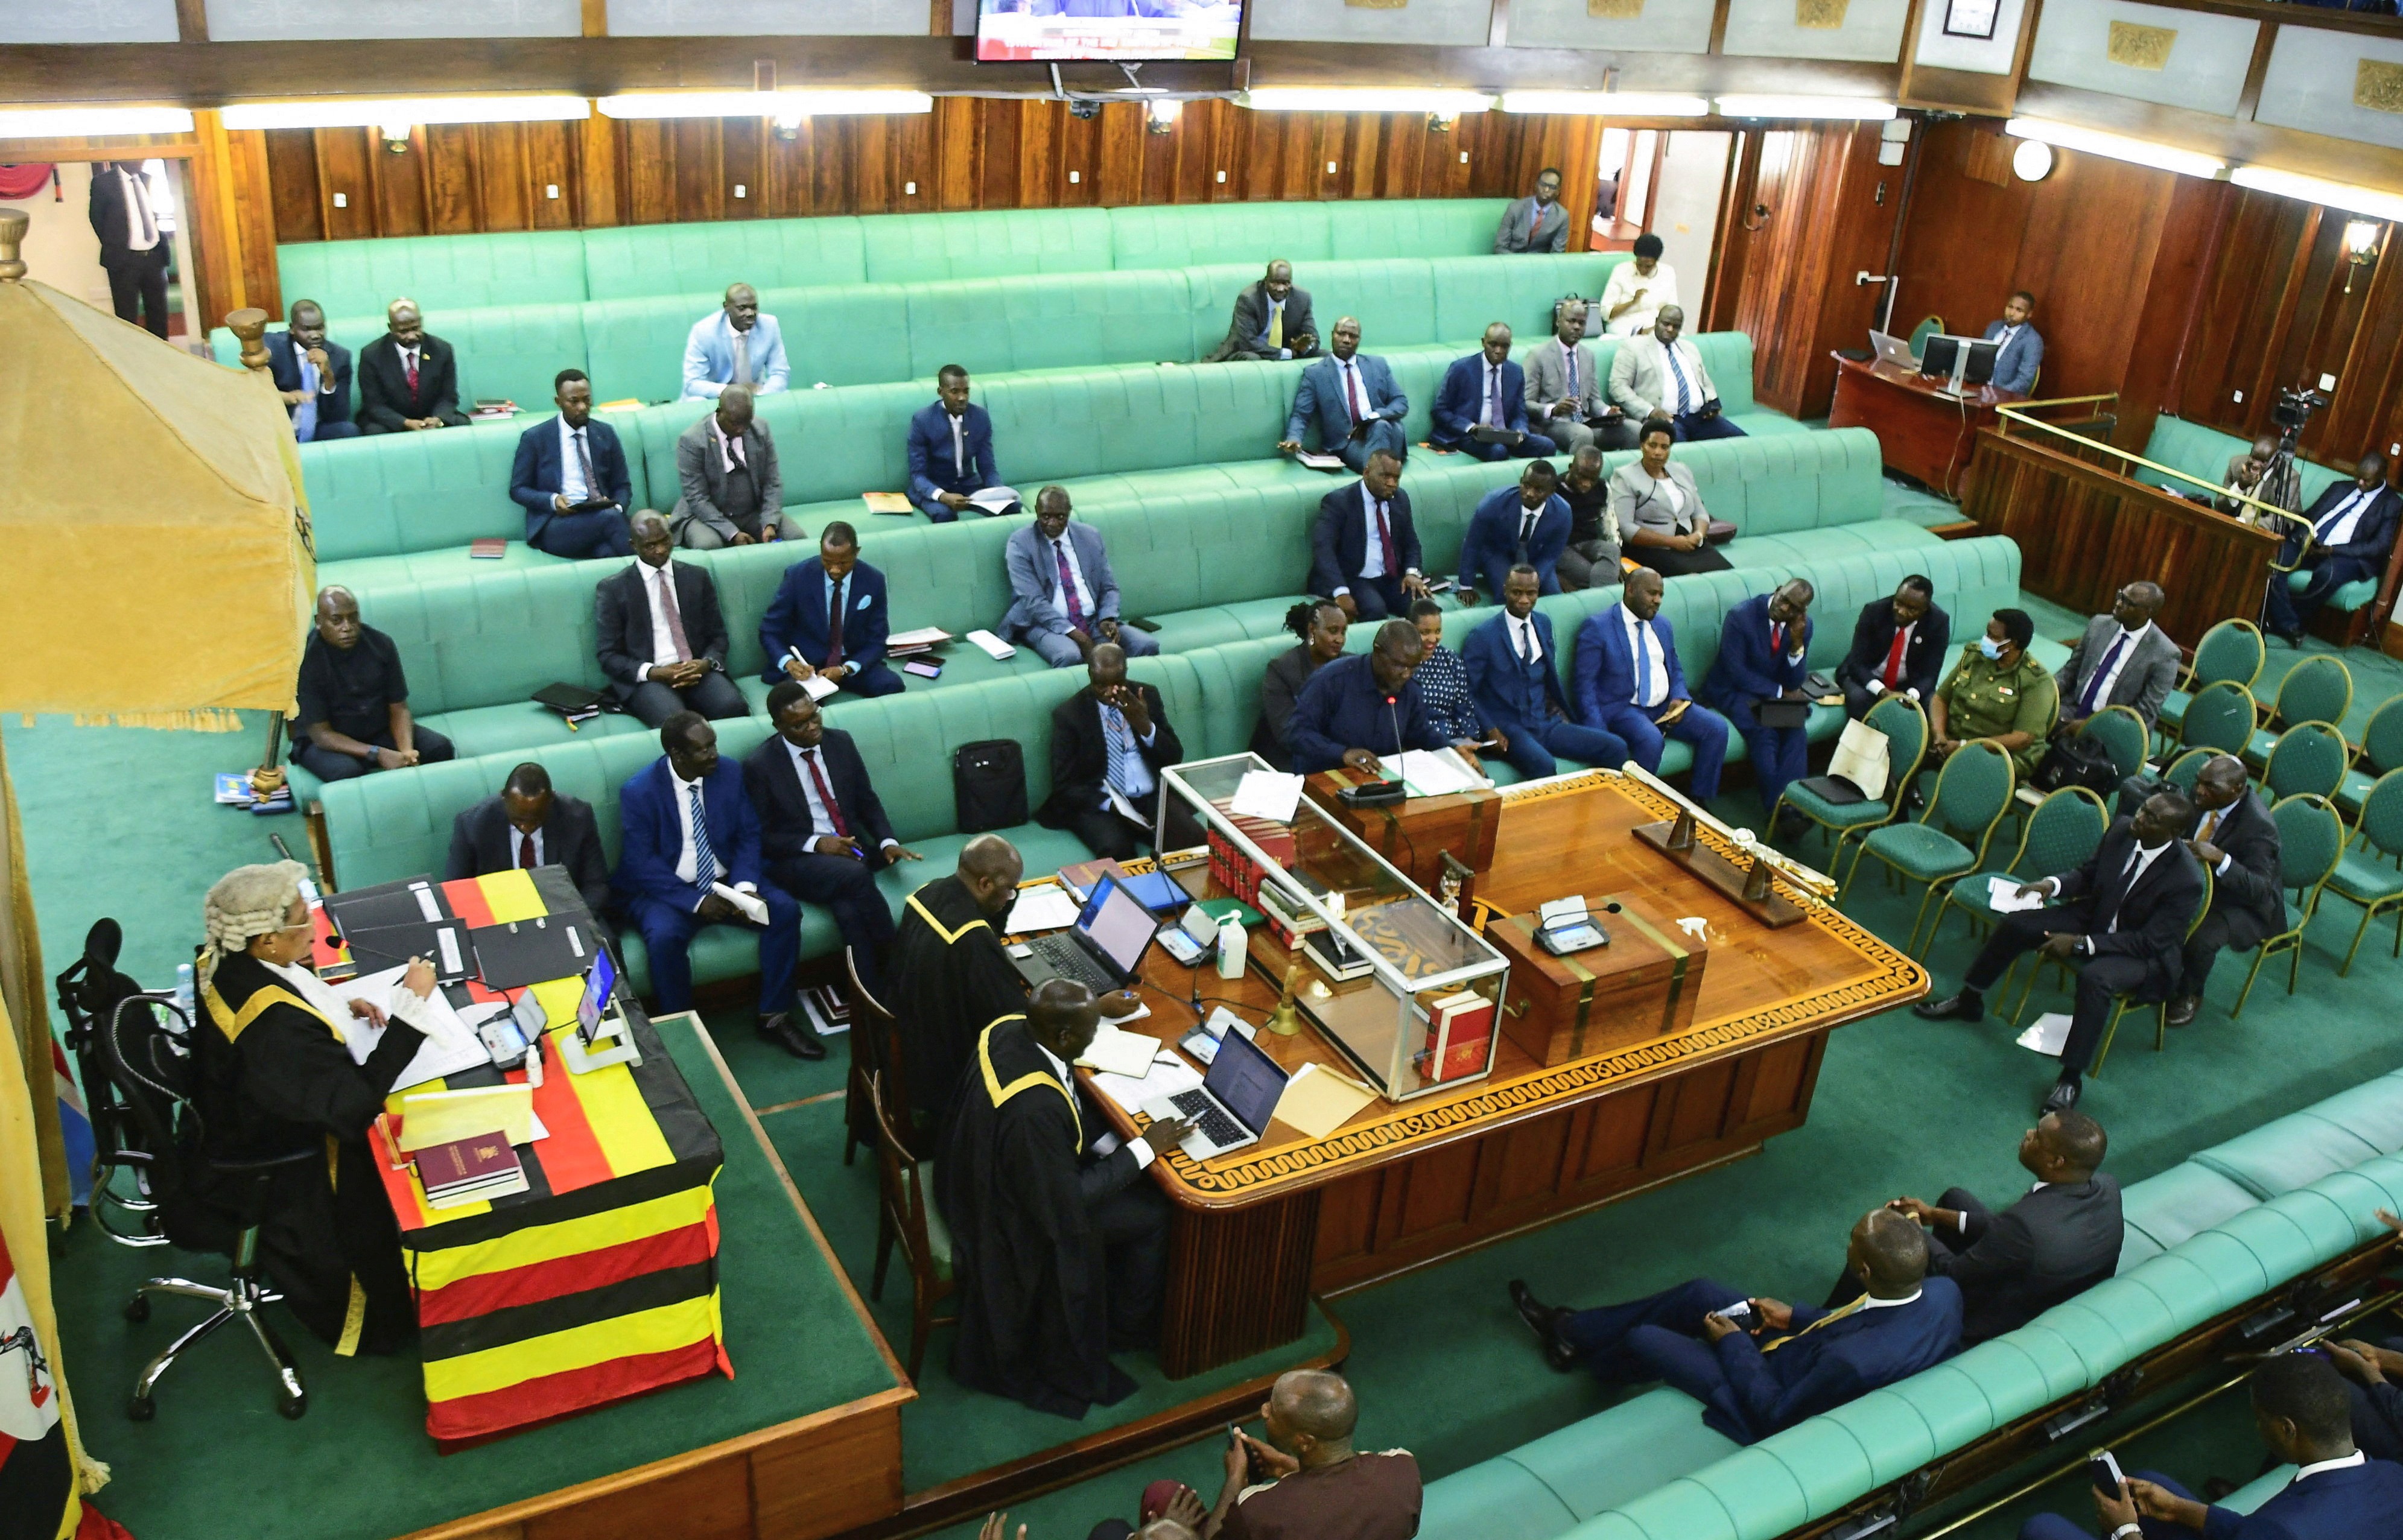 
Parlamento de Uganda aprova projeto de lei que prevê prisão de pessoas LGBTQIA+